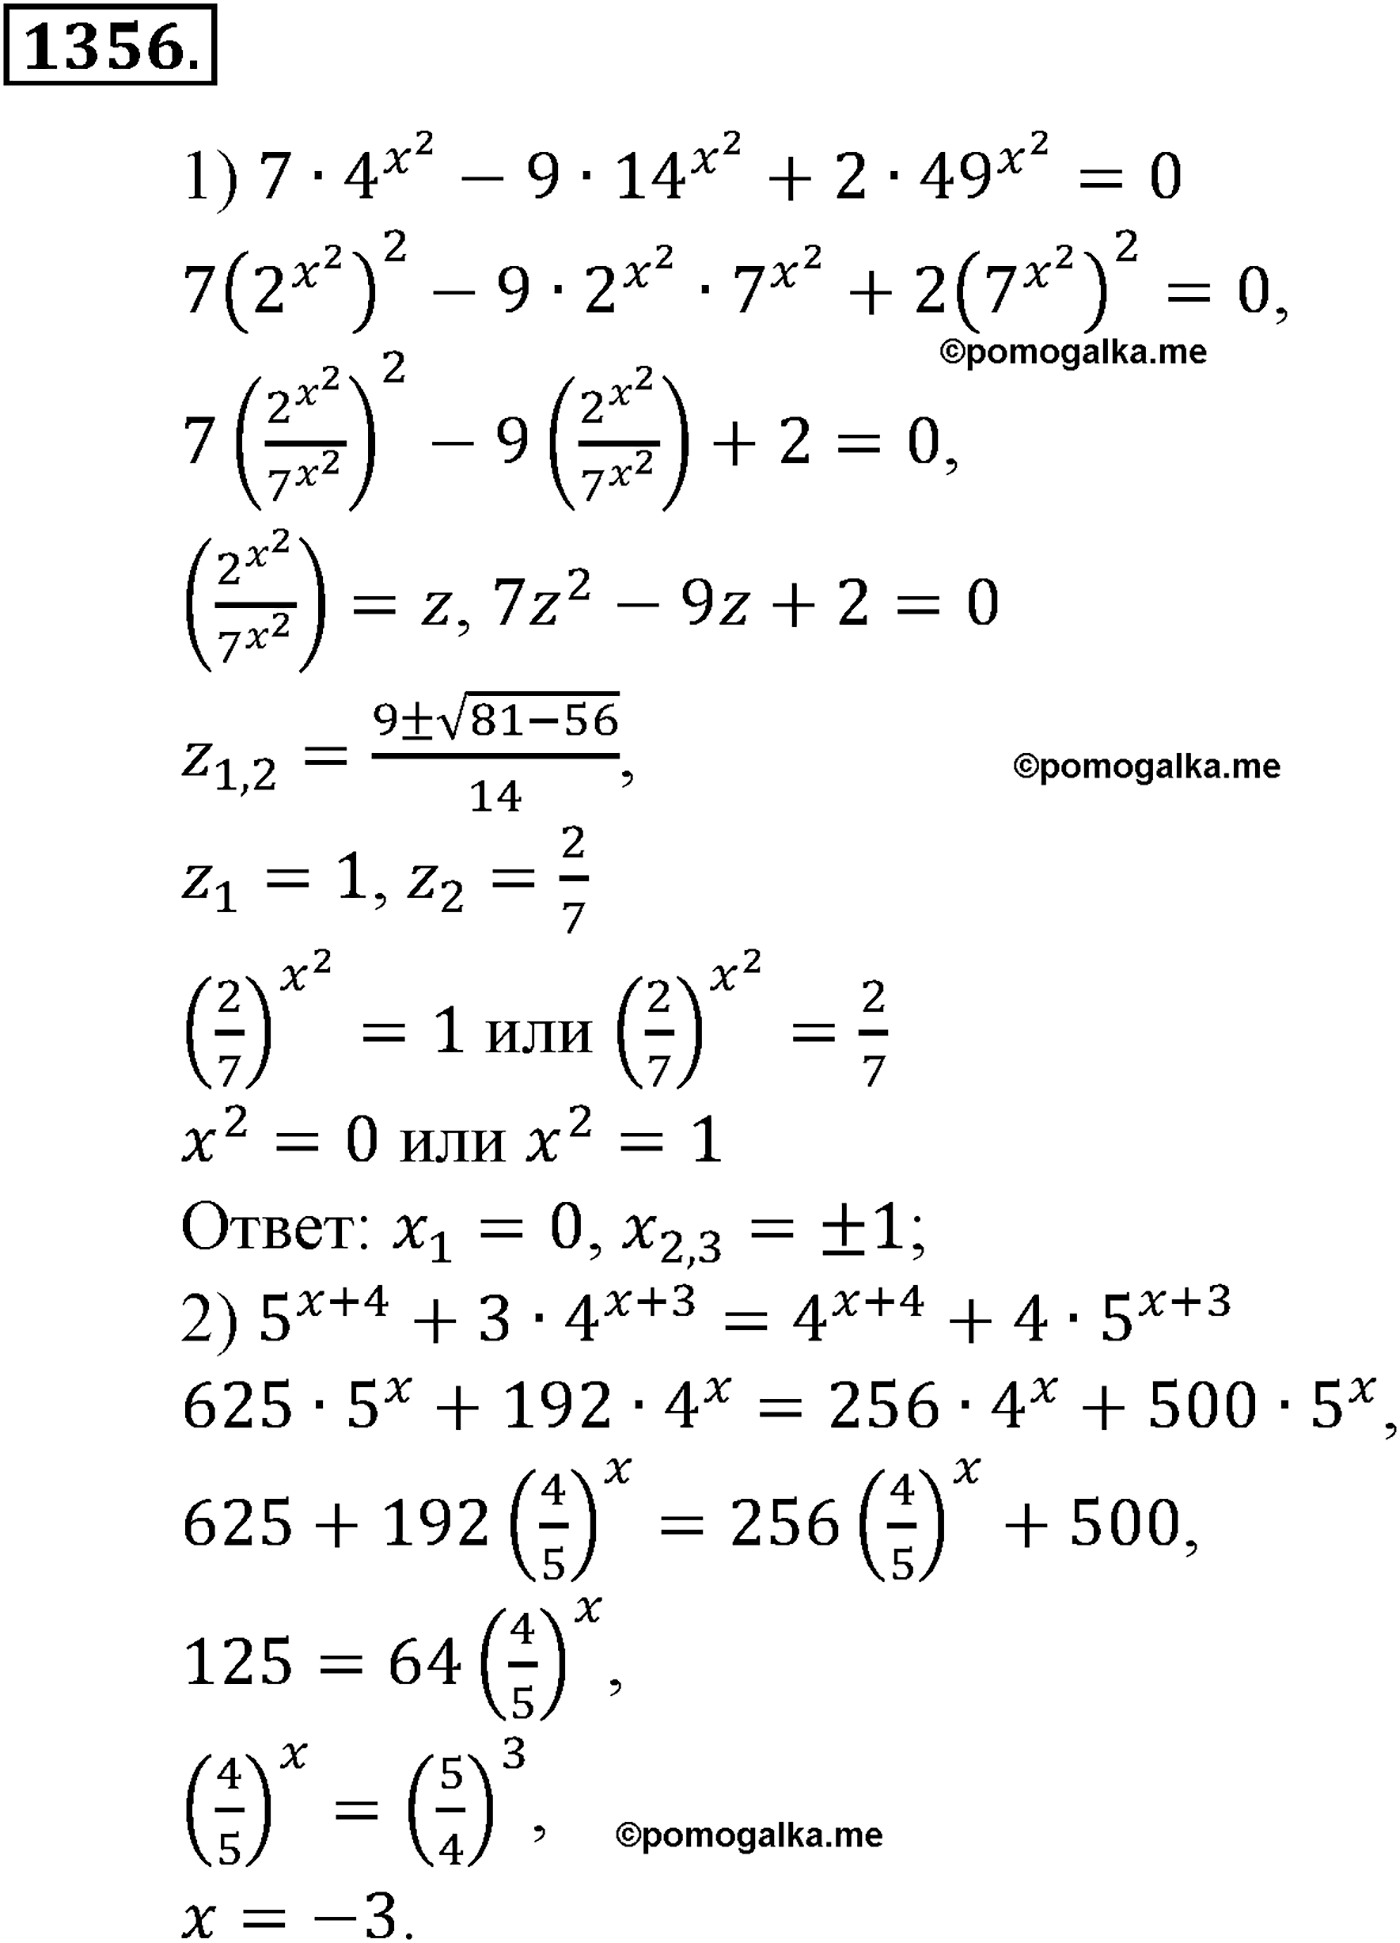 разбор задачи №1356 по алгебре за 10-11 класс из учебника Алимова, Колягина